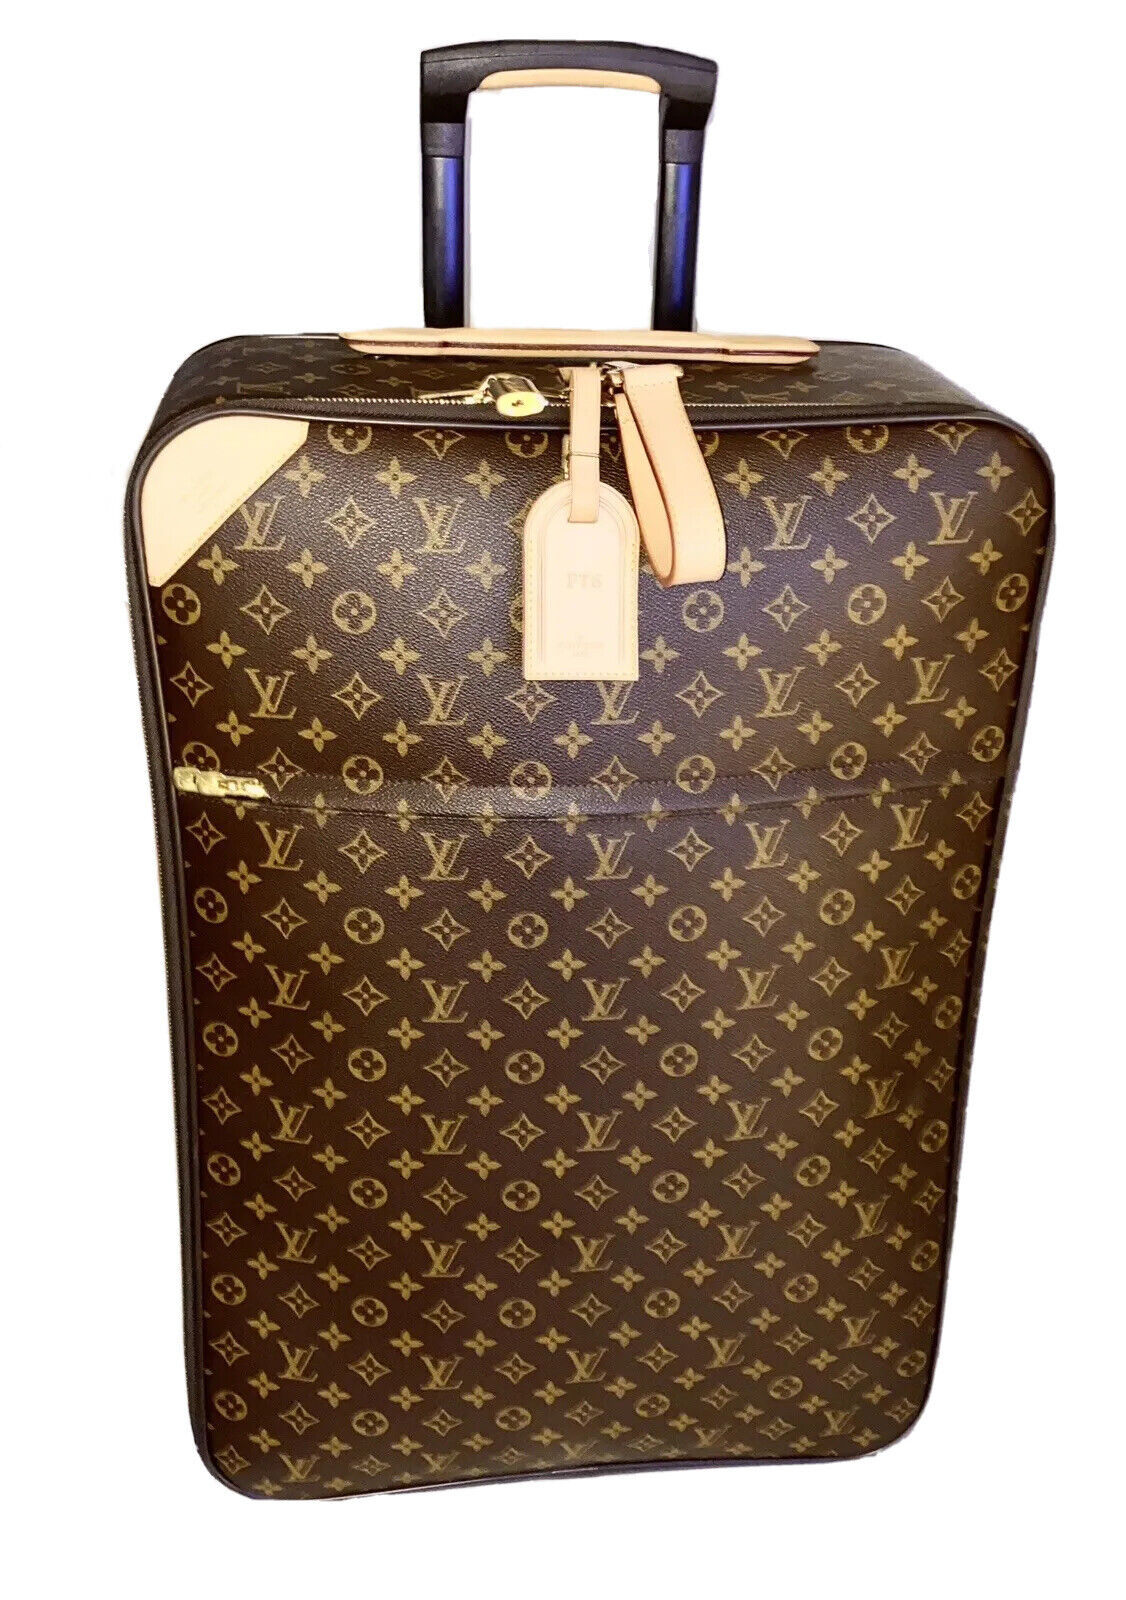 Louis Vuitton Pegase 70 Classic Bag Rolling Unisex Suitcase w/ Garment Bag 🎉